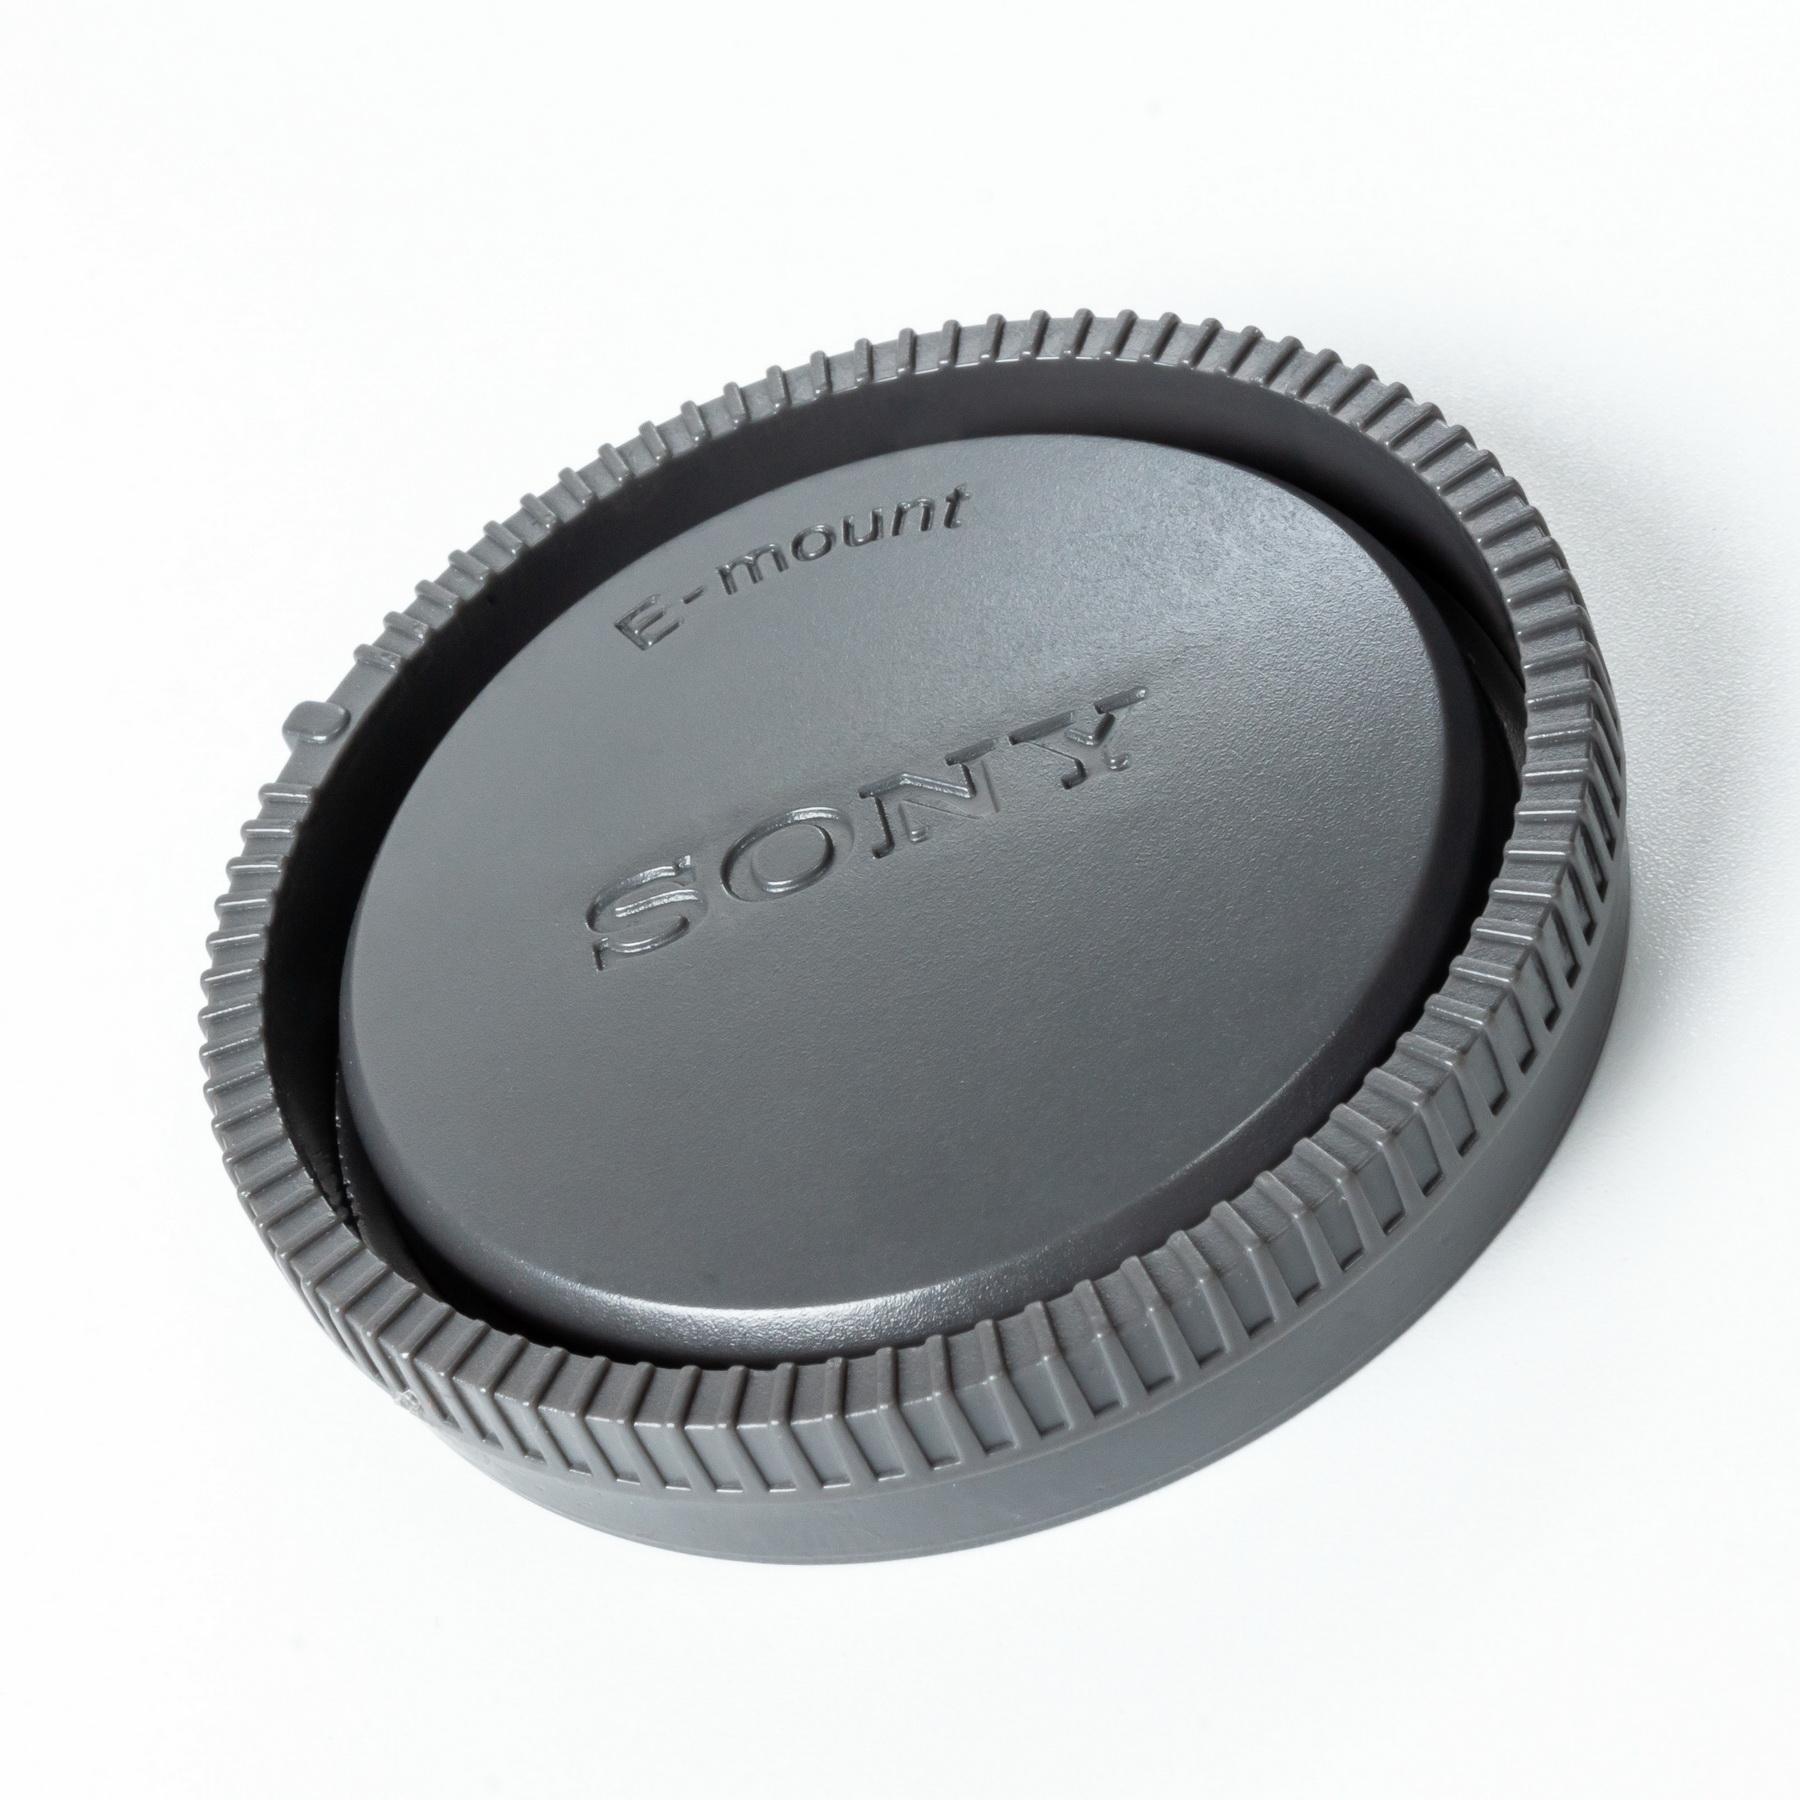 ฝาปิดท้ายเลนส์ SONY E-MOUNT สำหรับใส่เลนส์ Sony Mirrorless ได้ทุกรุ่น ( Sony E-Mount Rear Lens Cap ) ( สำหรับ กล้อง โซนี่ ) ( ฝาปิดเลนส์ ) ( ฝาปิด เลนส์ ) ( E / FE / NEX )